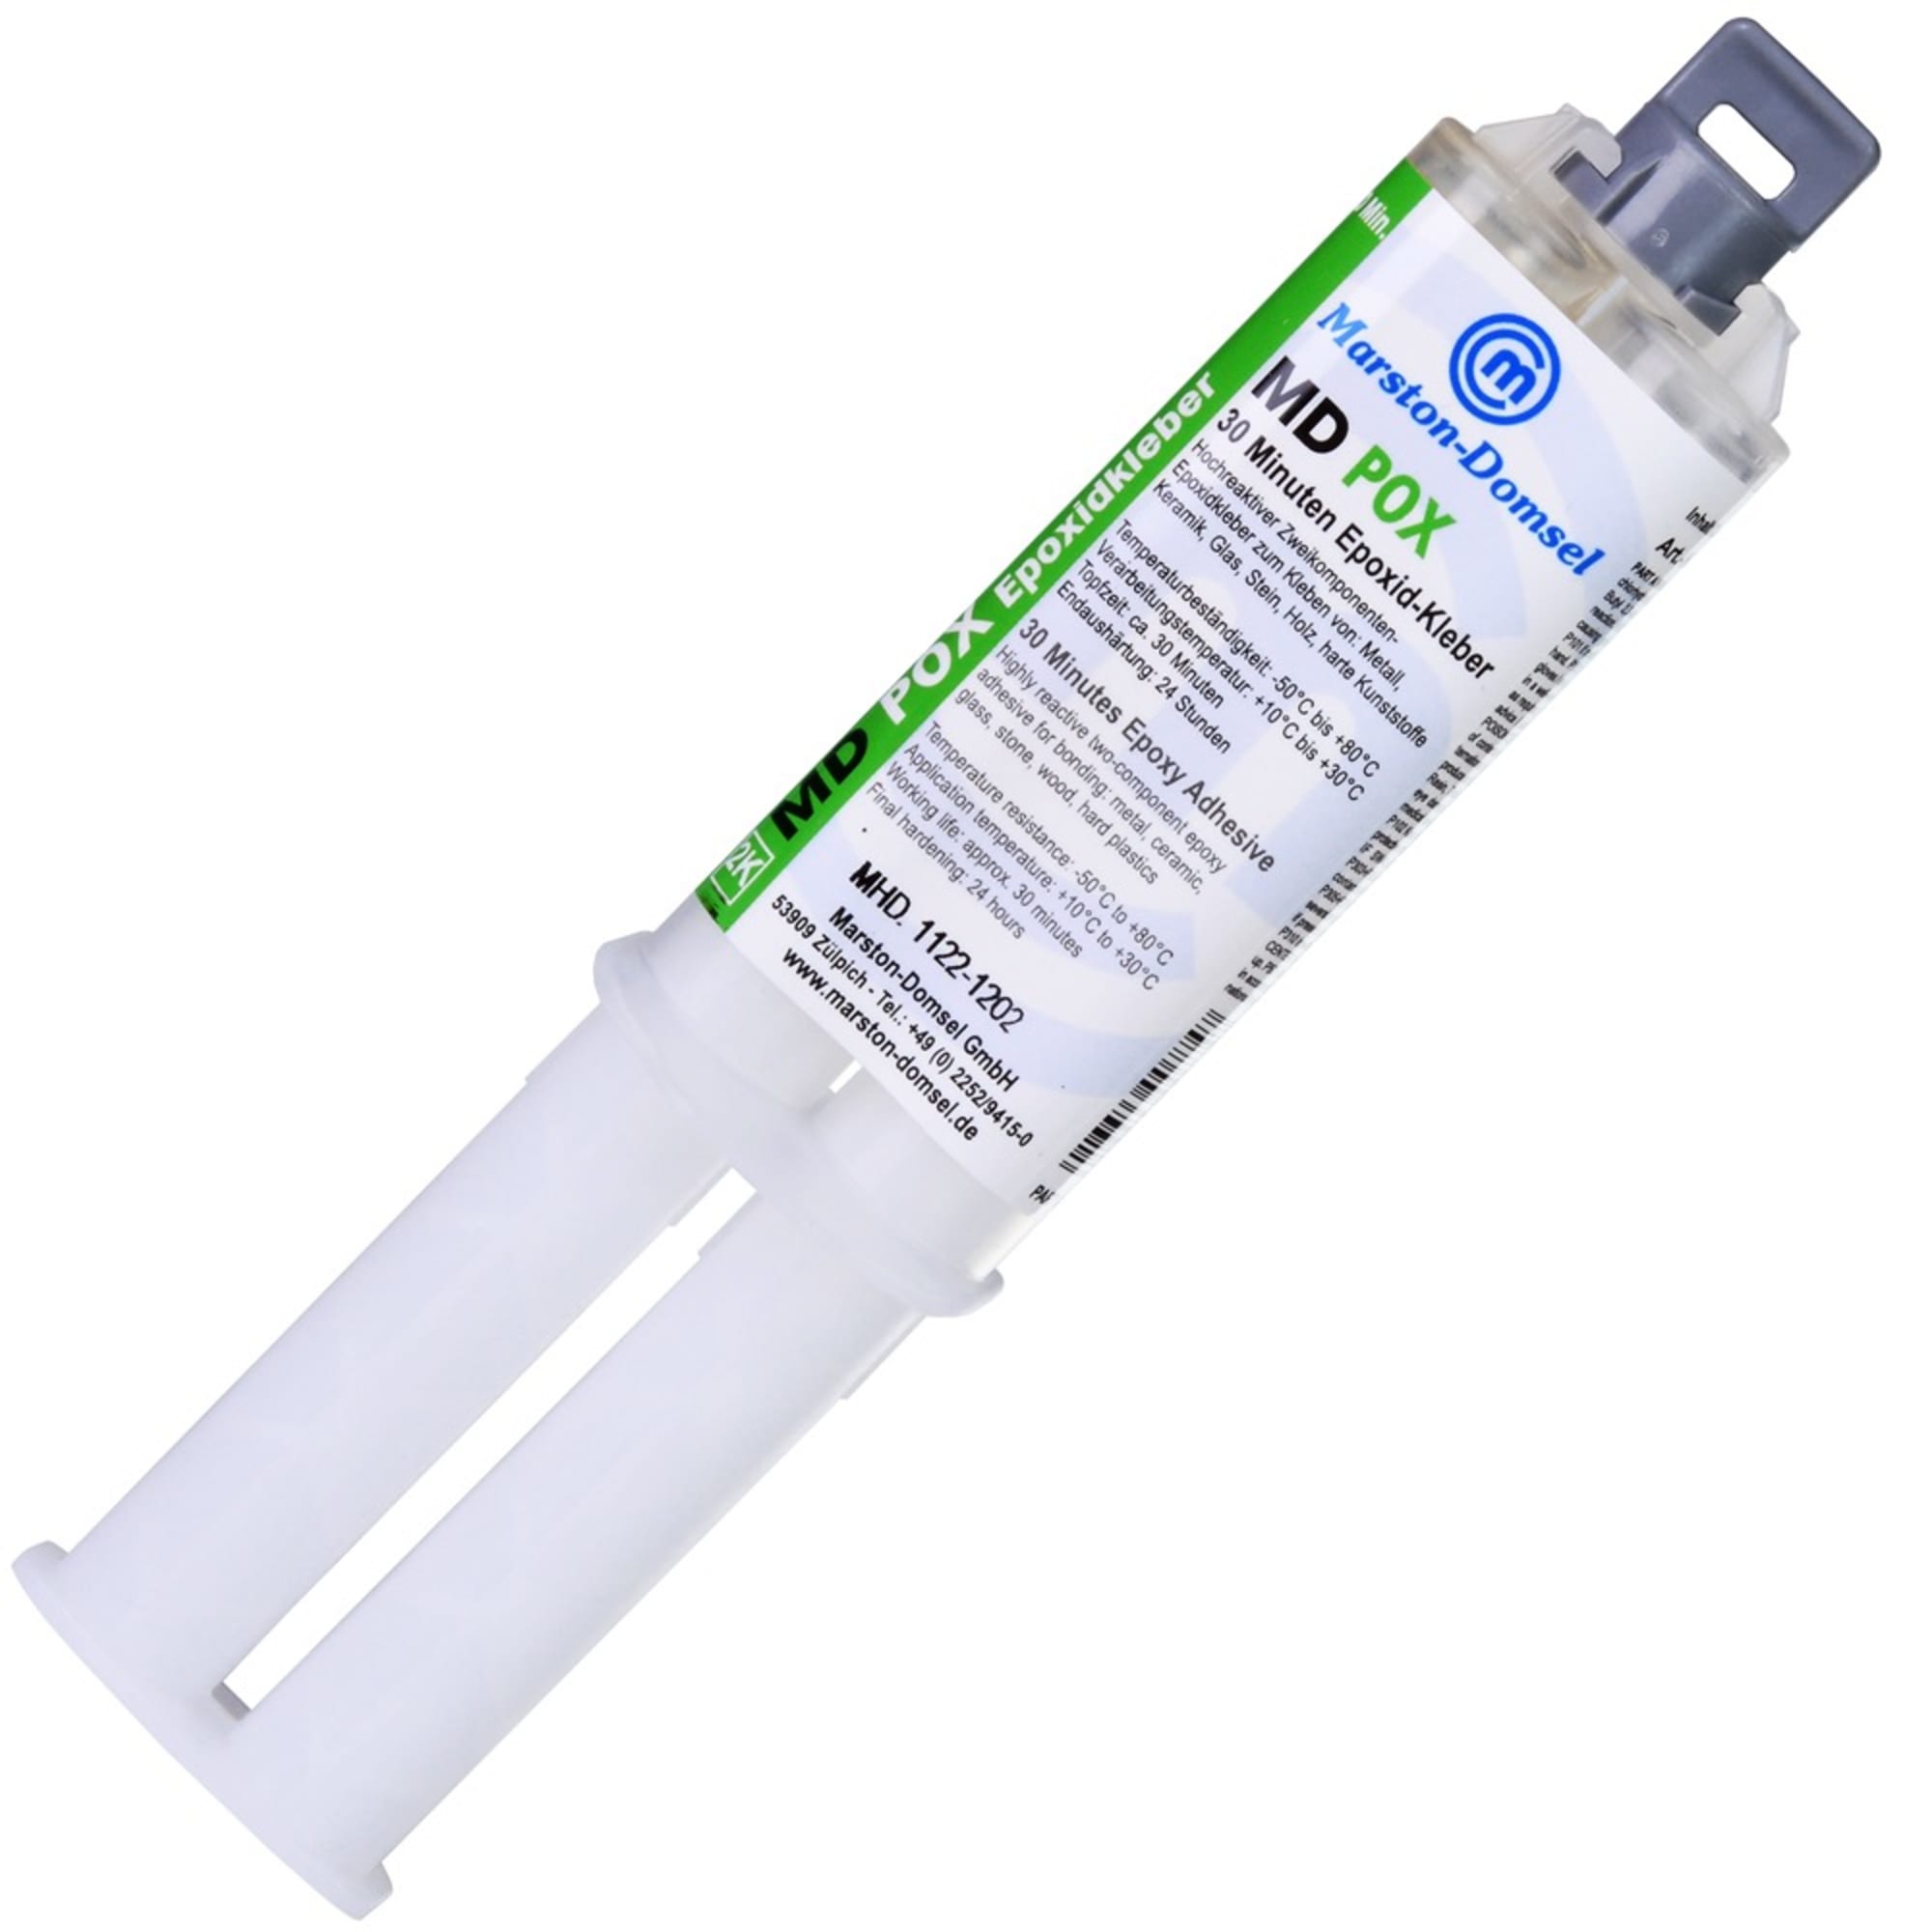 MD POX 30 minutes (MV 1:1) double syringe, 25 g